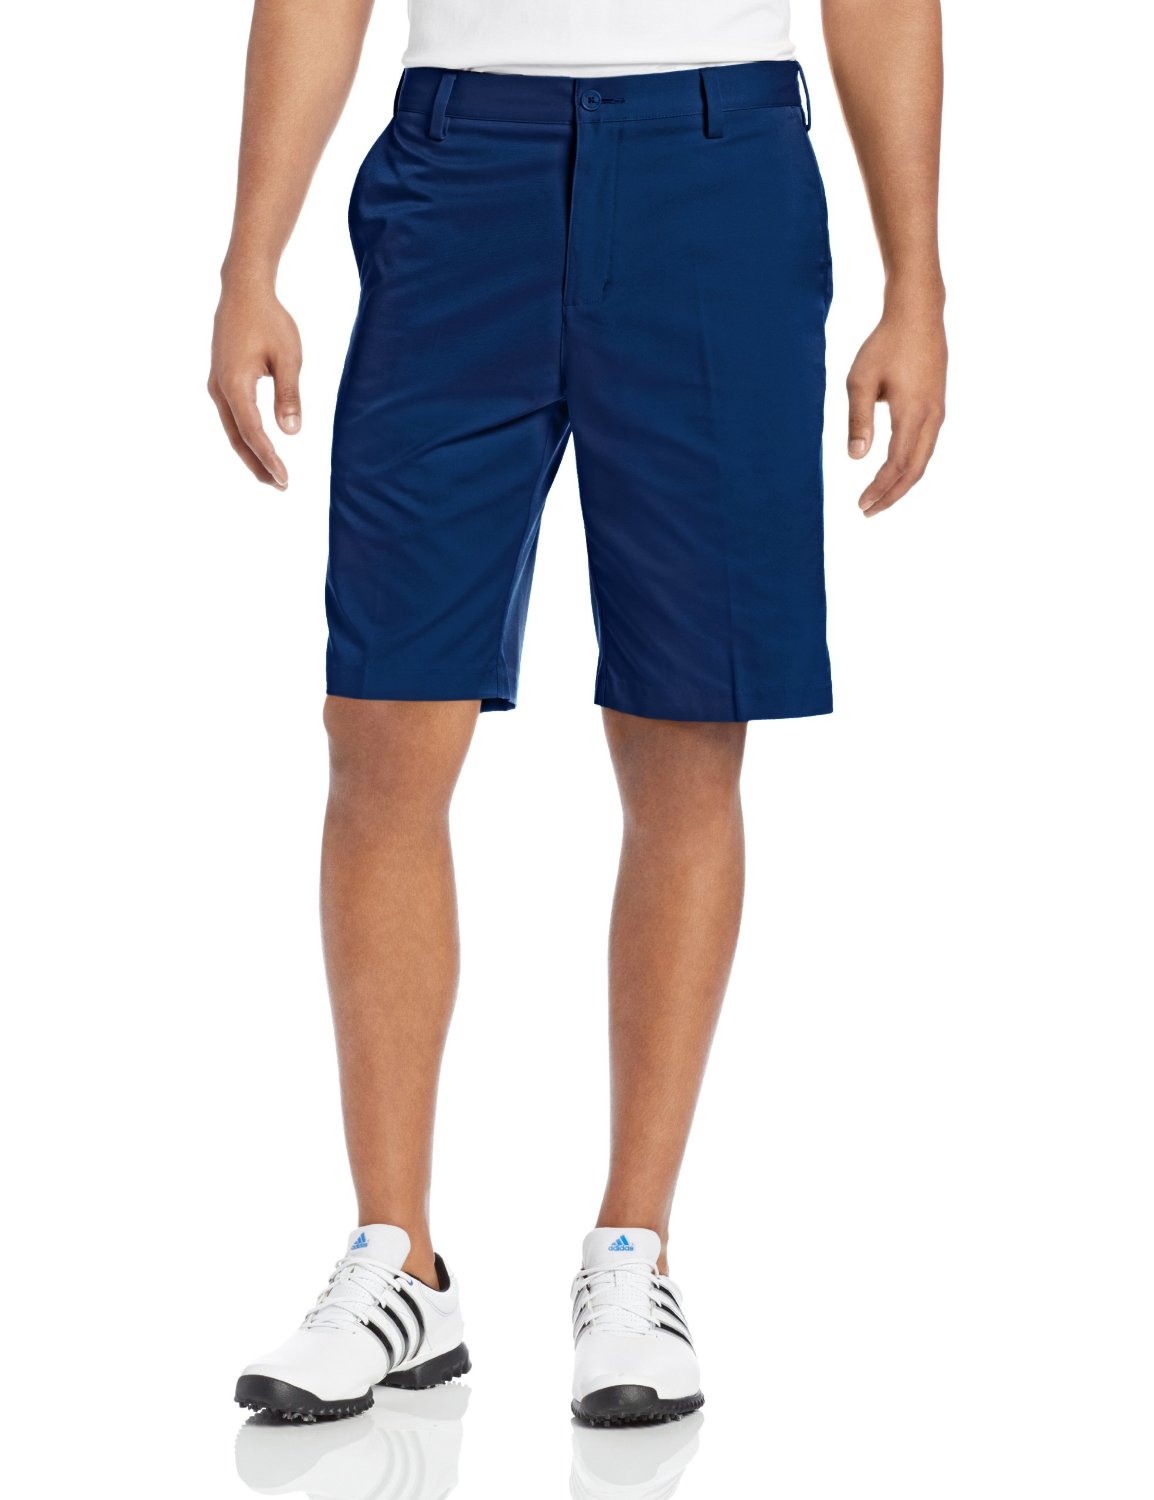 Adidas Mens Flat Front Golf Shorts